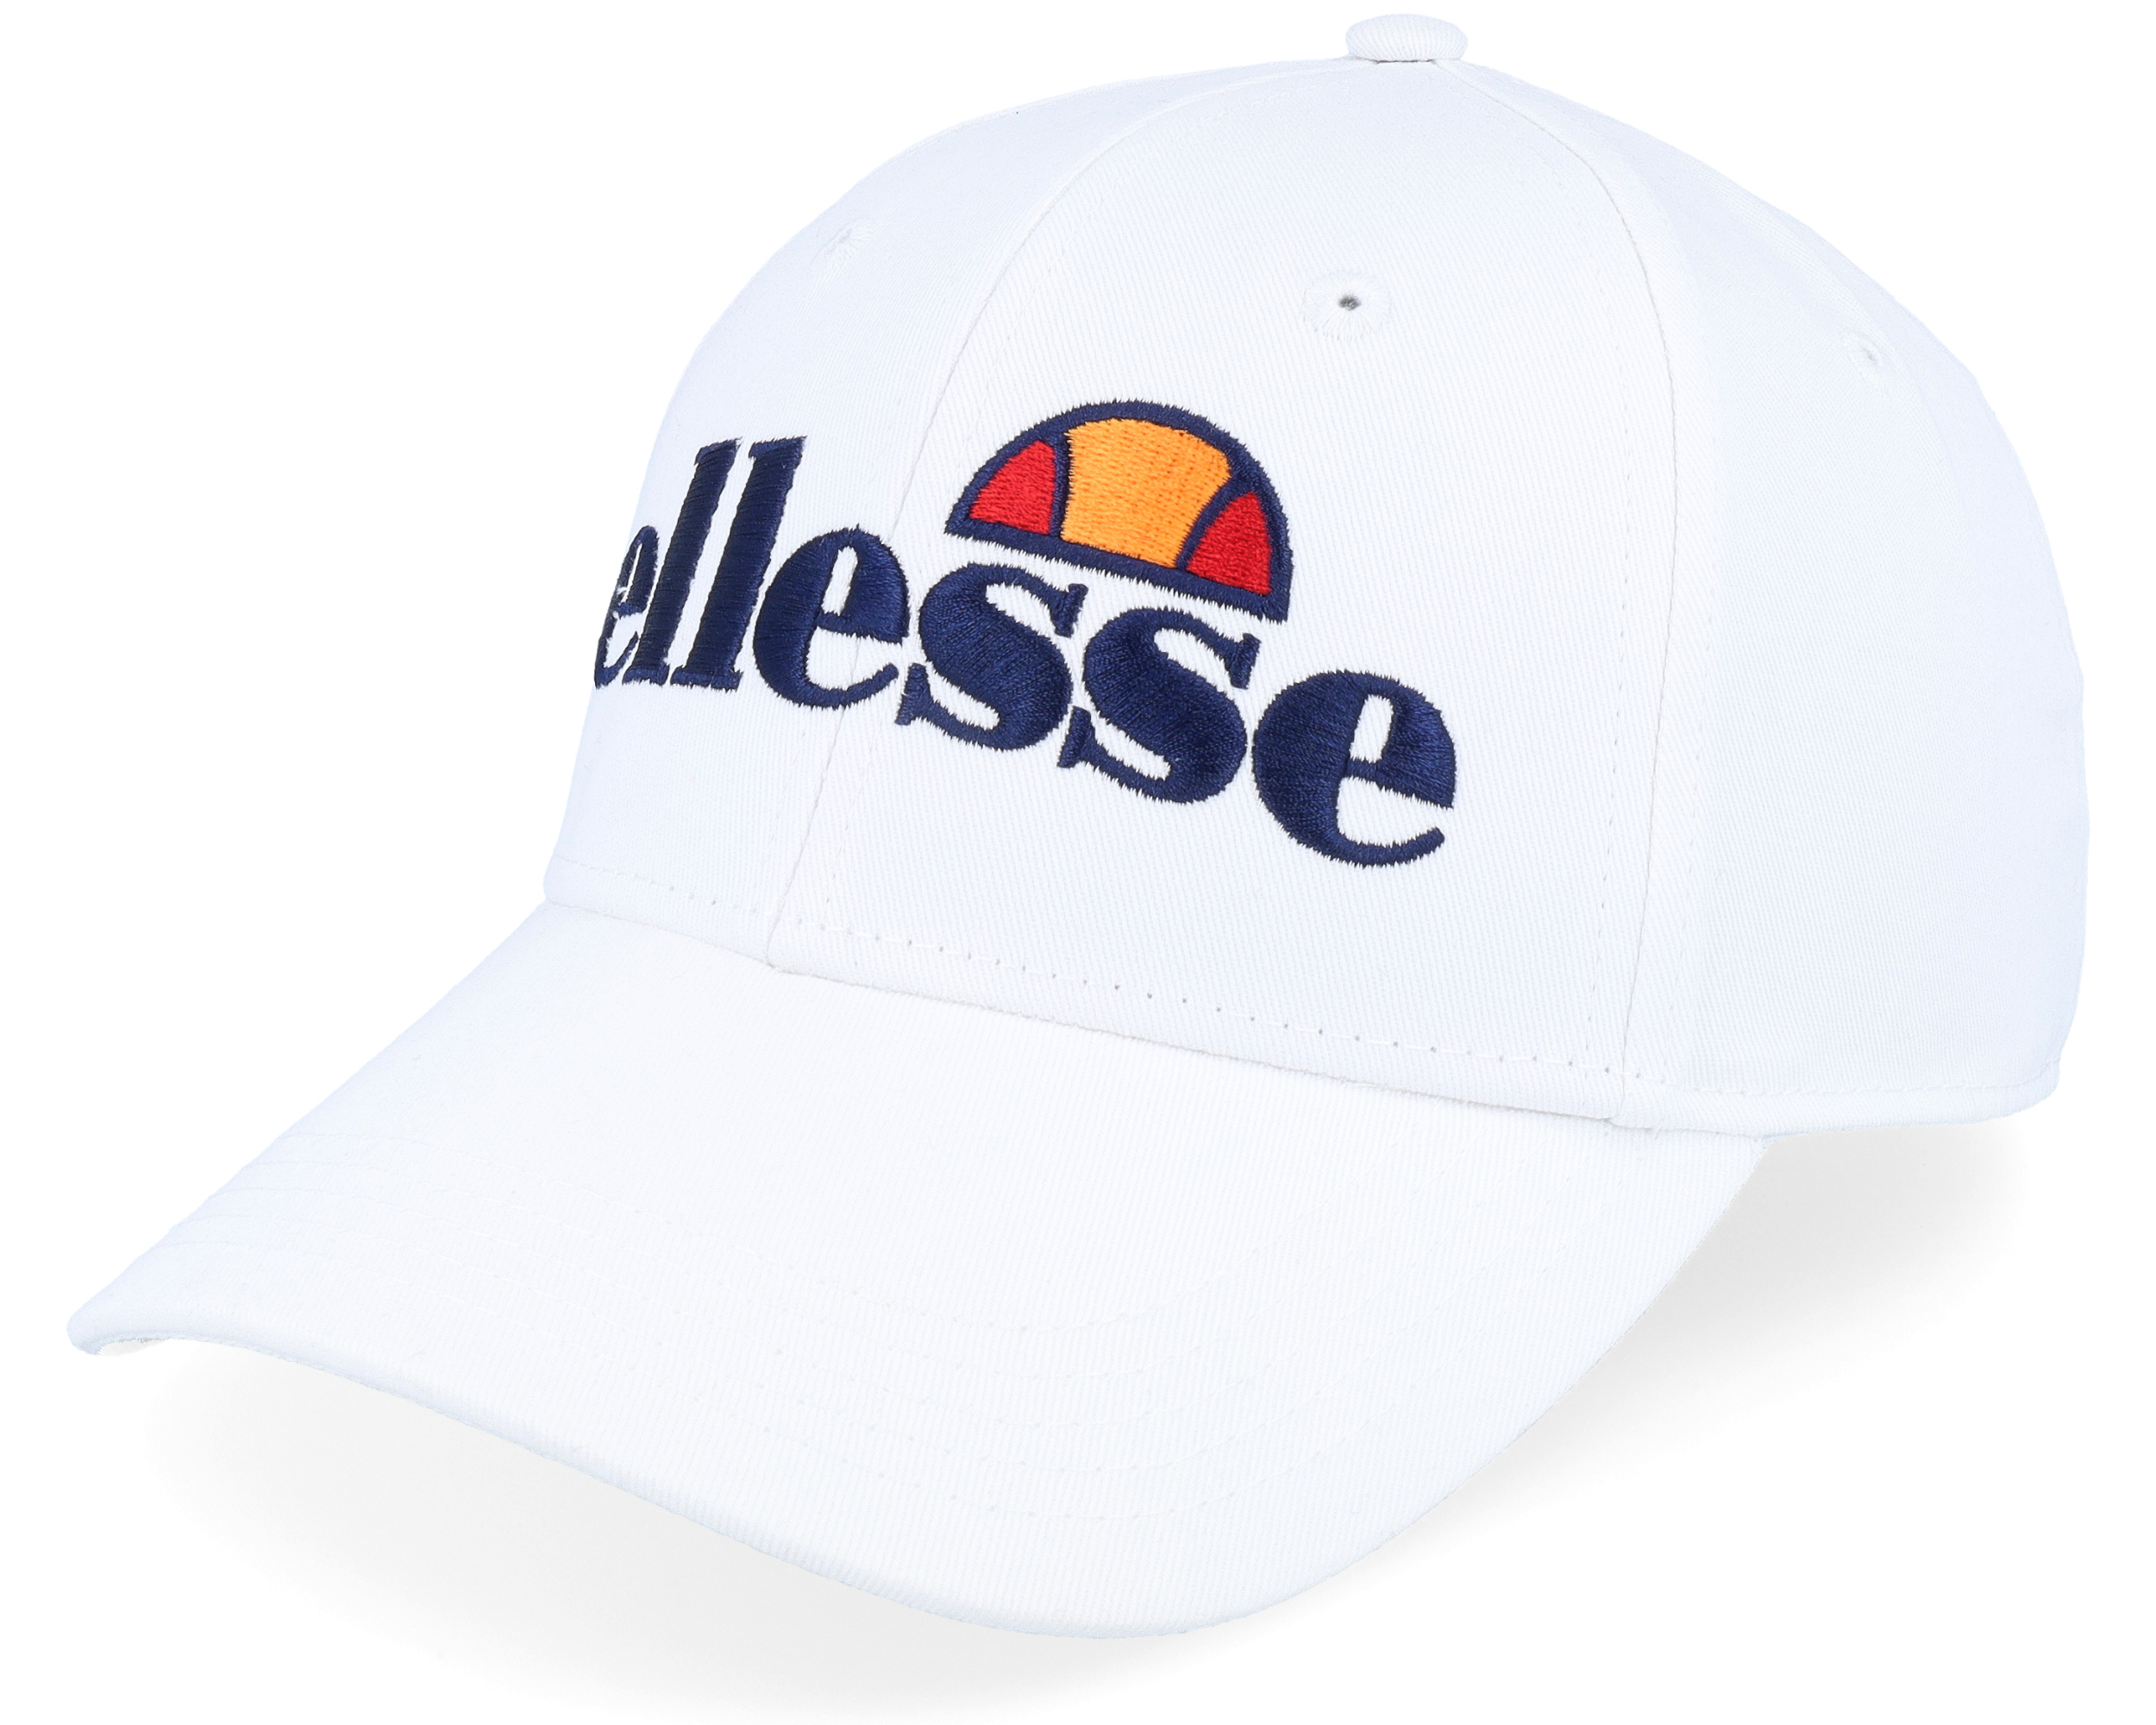 Ragusa White/Navy Adjustable - Ellesse cap | Baseball Caps